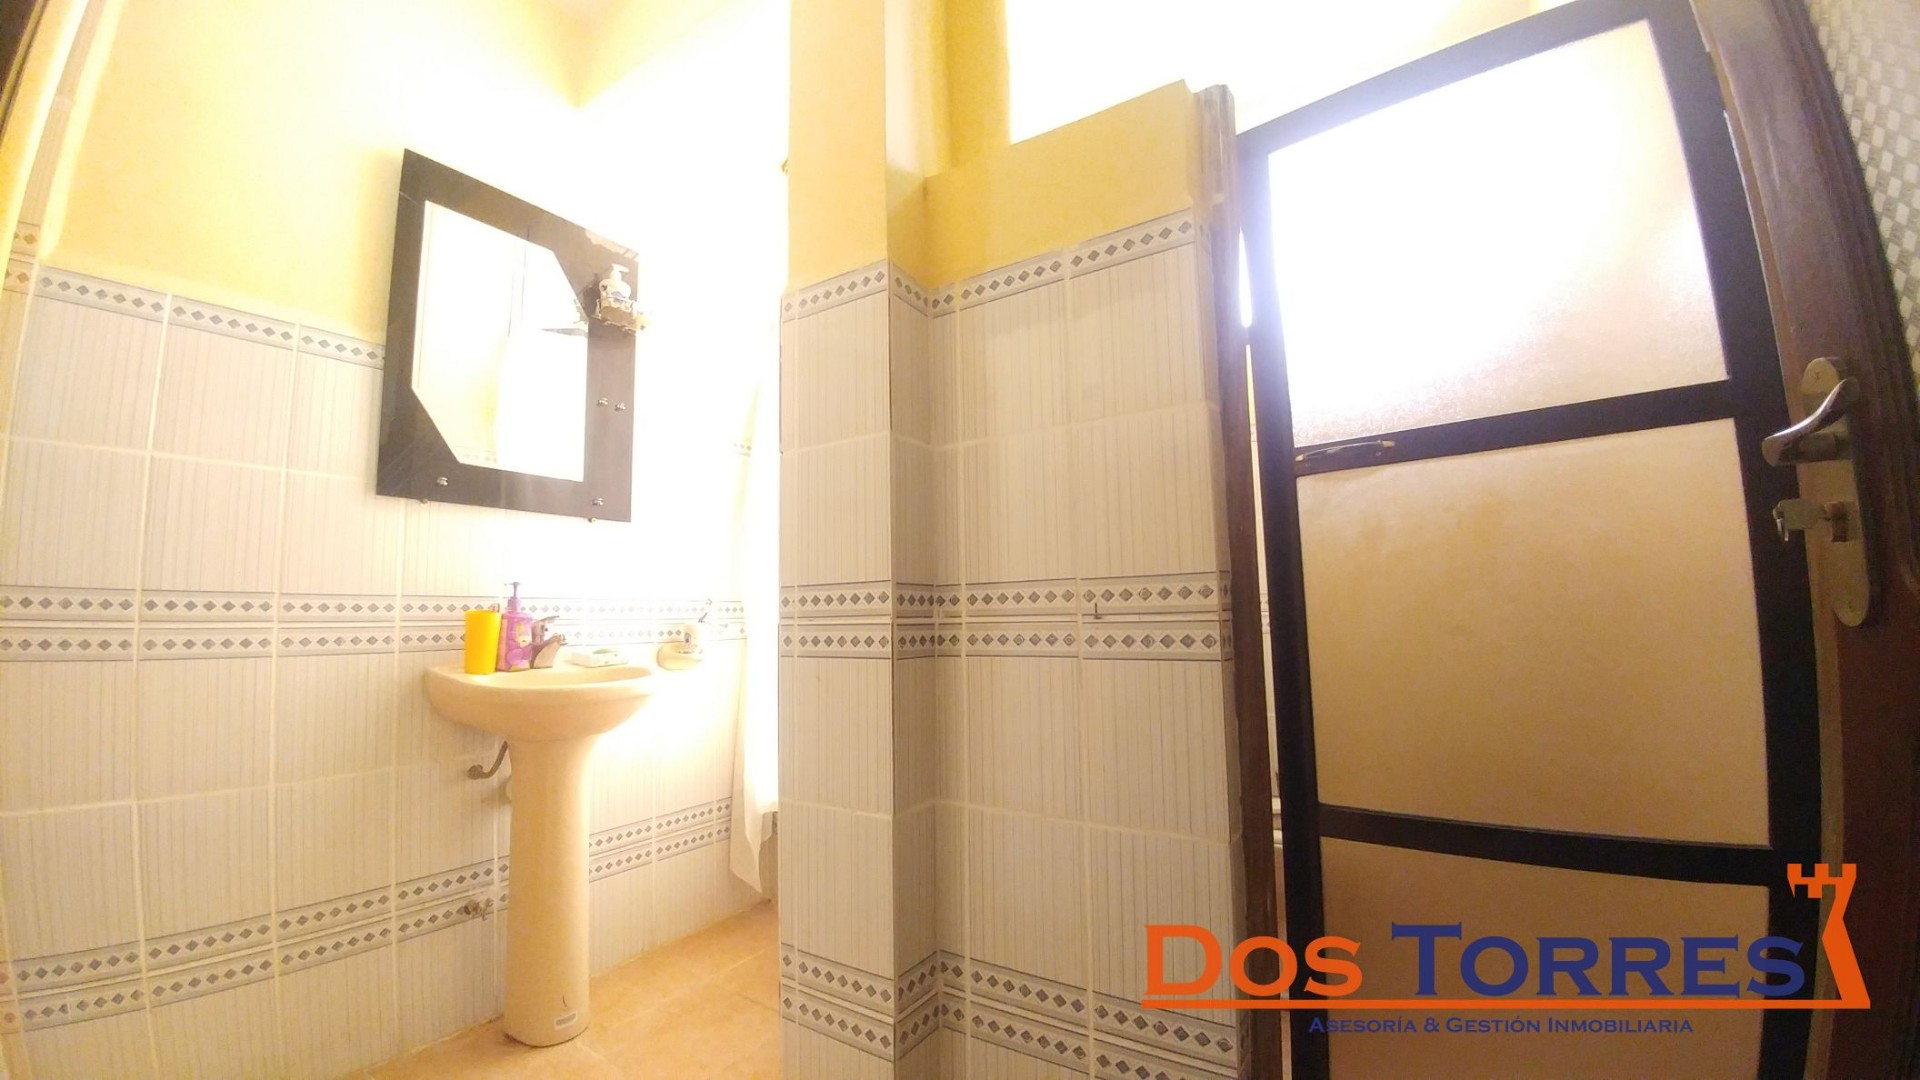 Casa en Venta137.000$us Chillimarca casa en venta con 5 Dormitorios - Ref. 910 Foto 8